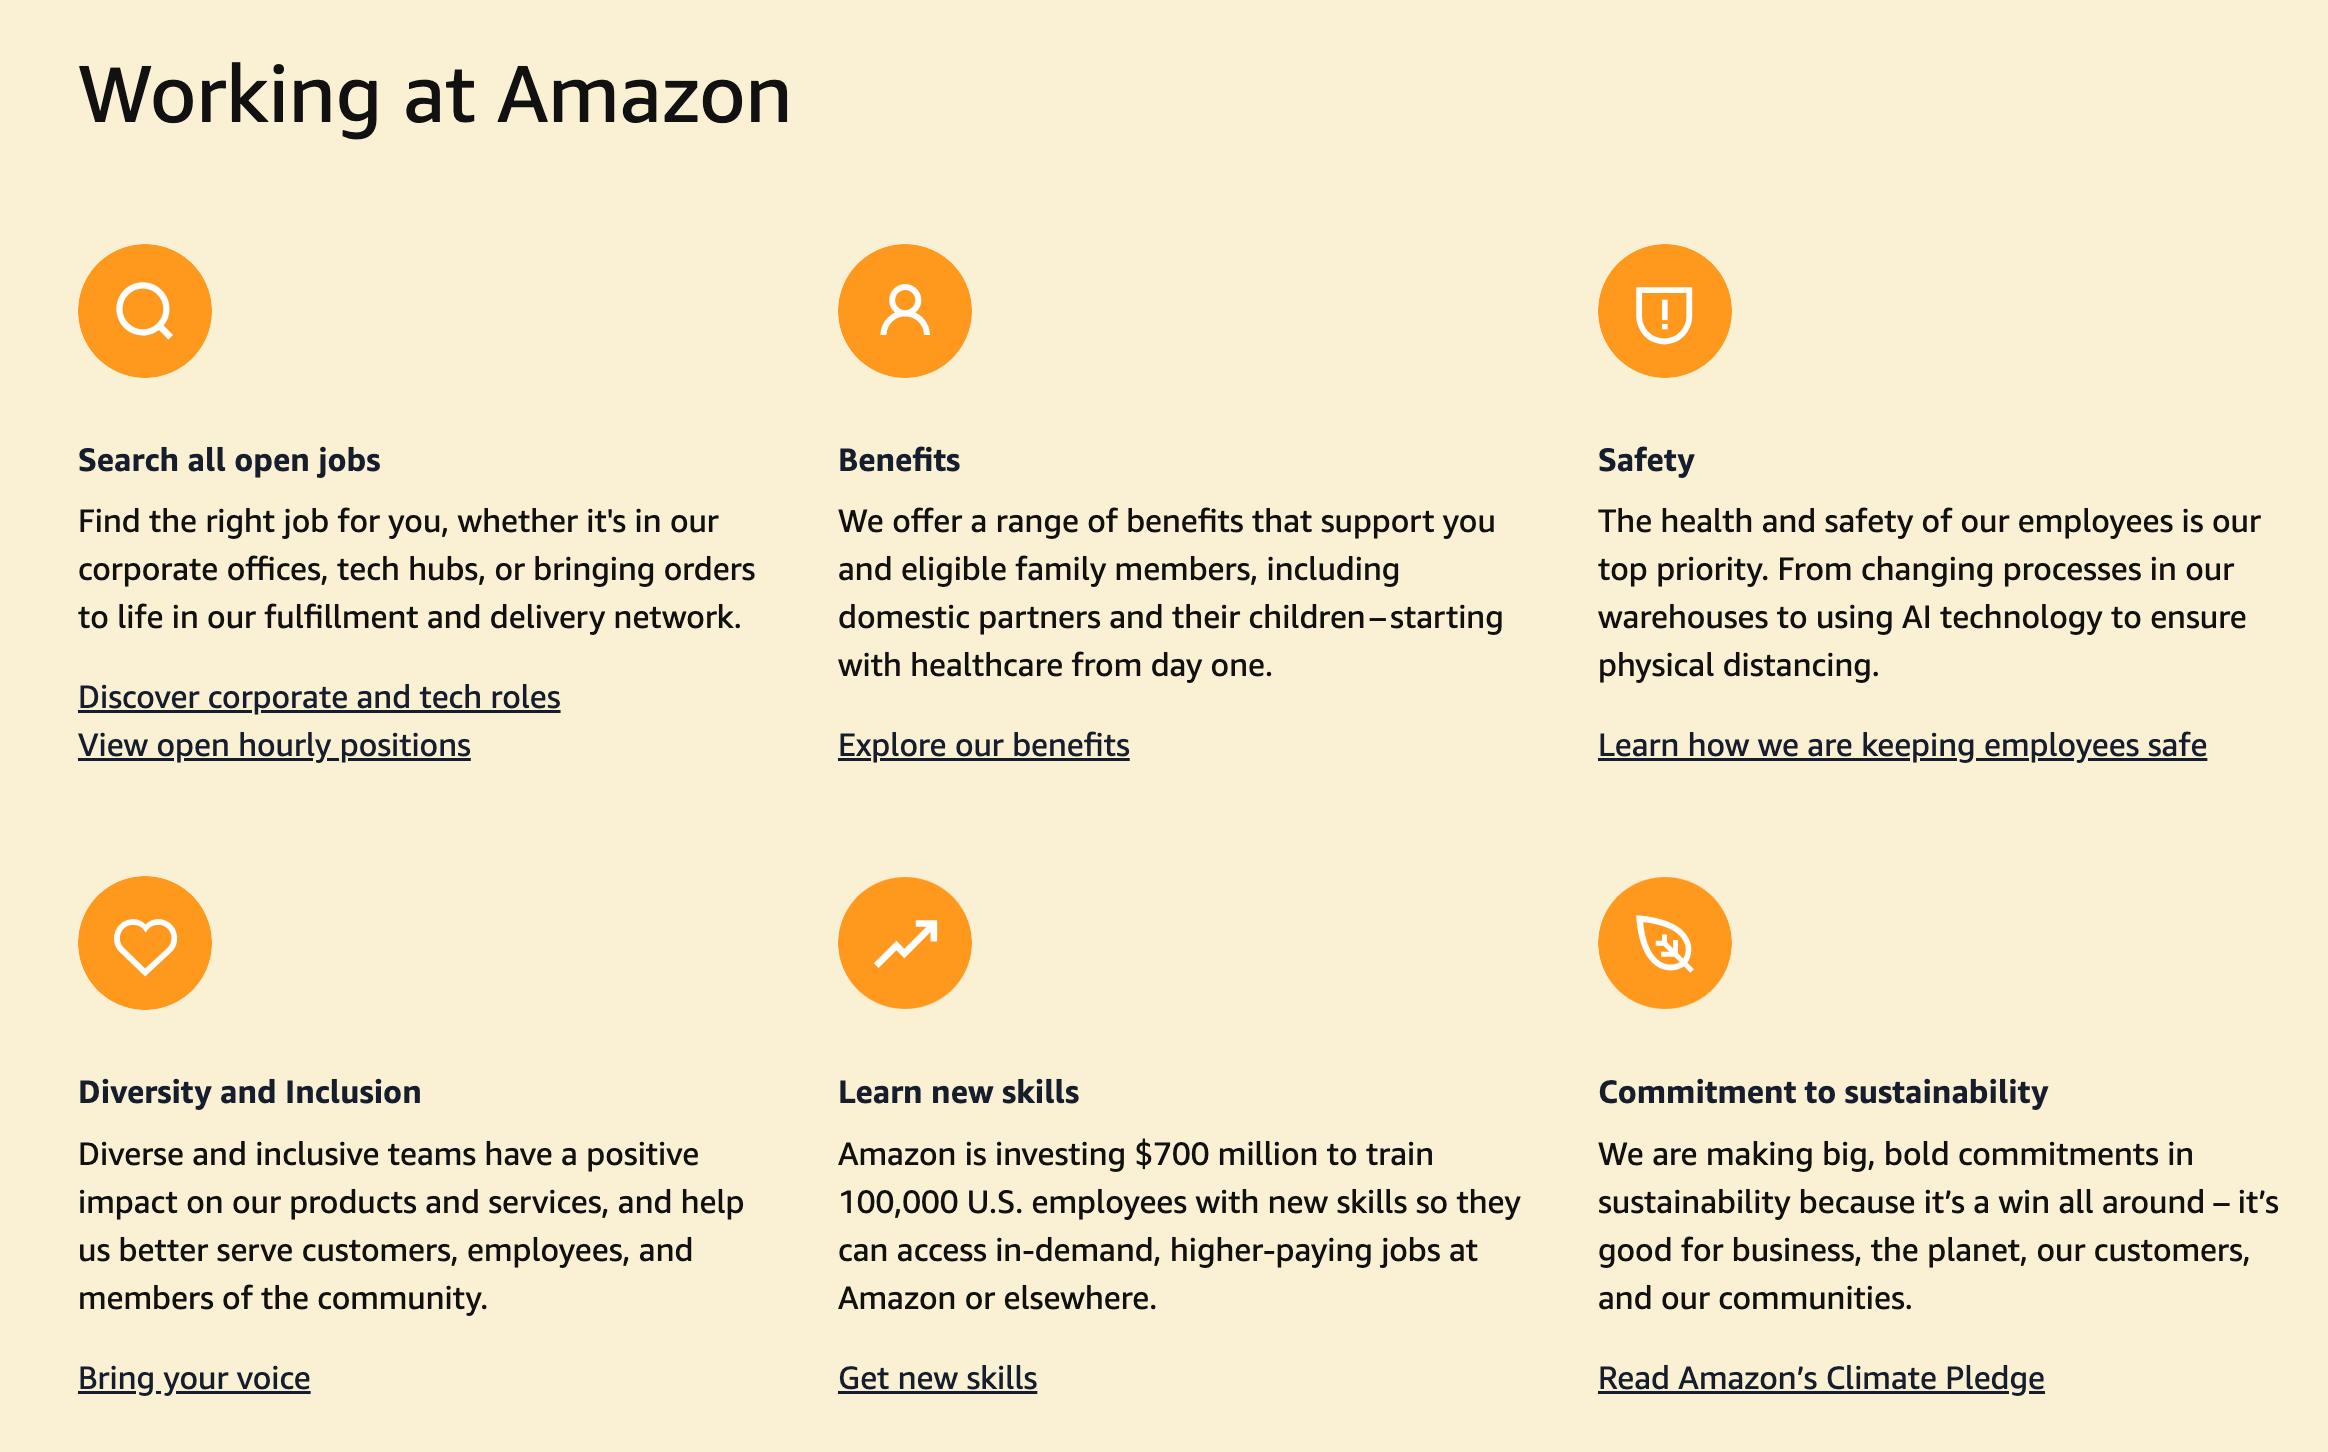 Amazon Customer Service Jobs Remote: Preparing for an Amazon customer service job remote interview.